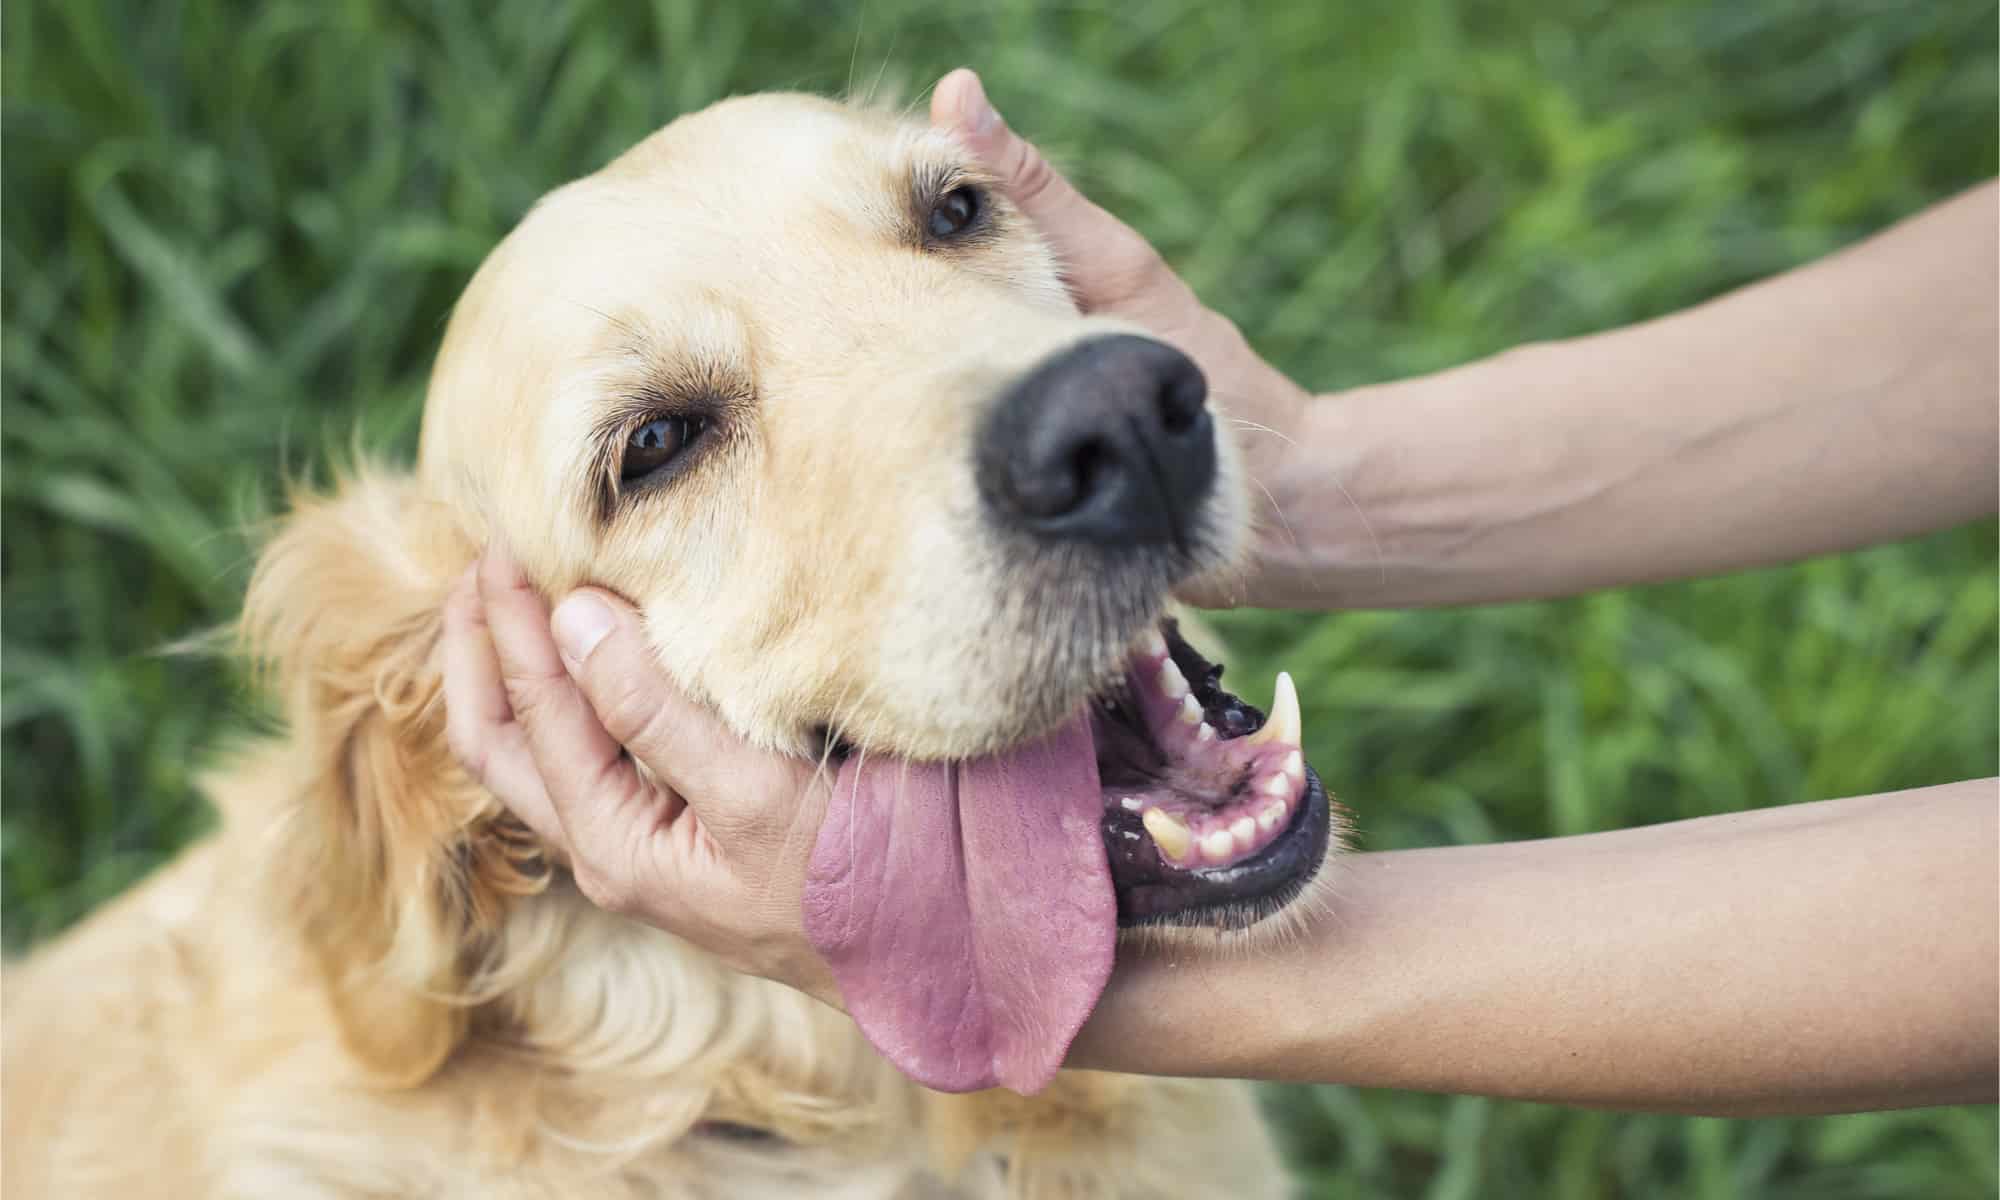 Petting a golden retrievers head